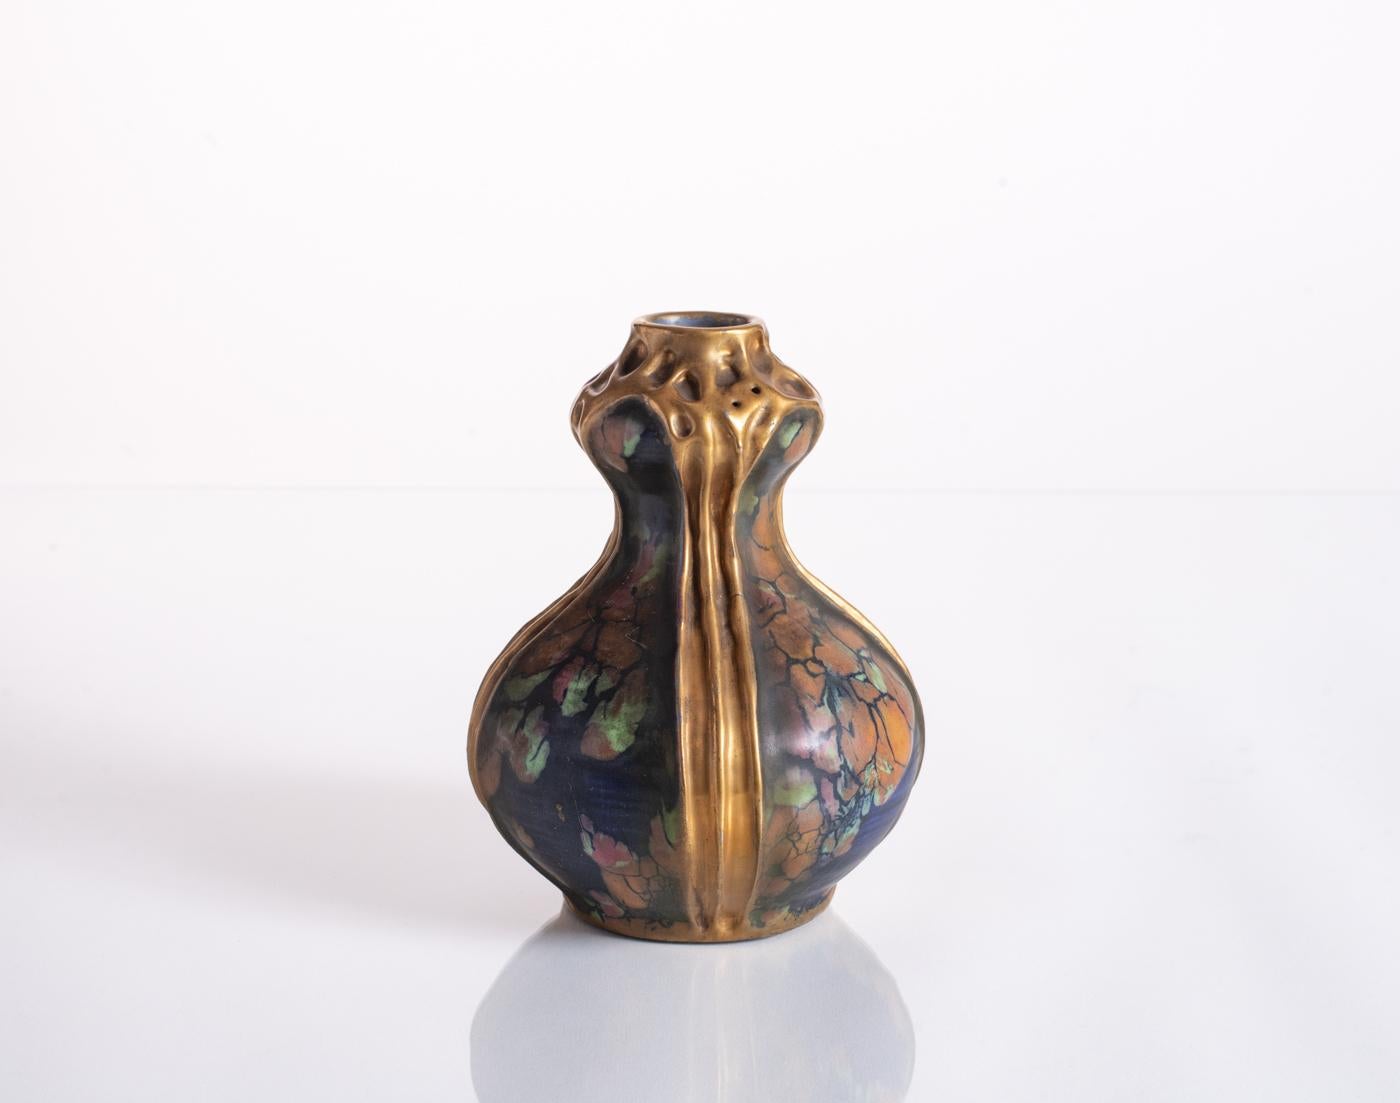 Aus der Serie Amphora, die unter dem Namen Confetti-Dekor bekannt wurde: eine zierliche Vase mit kobaltfarbener Unterglasurmalerei, die durch große Krakeleien grüne, orangefarbene und rosafarbene Flecken und dicke Goldfäden zur Ergänzung der